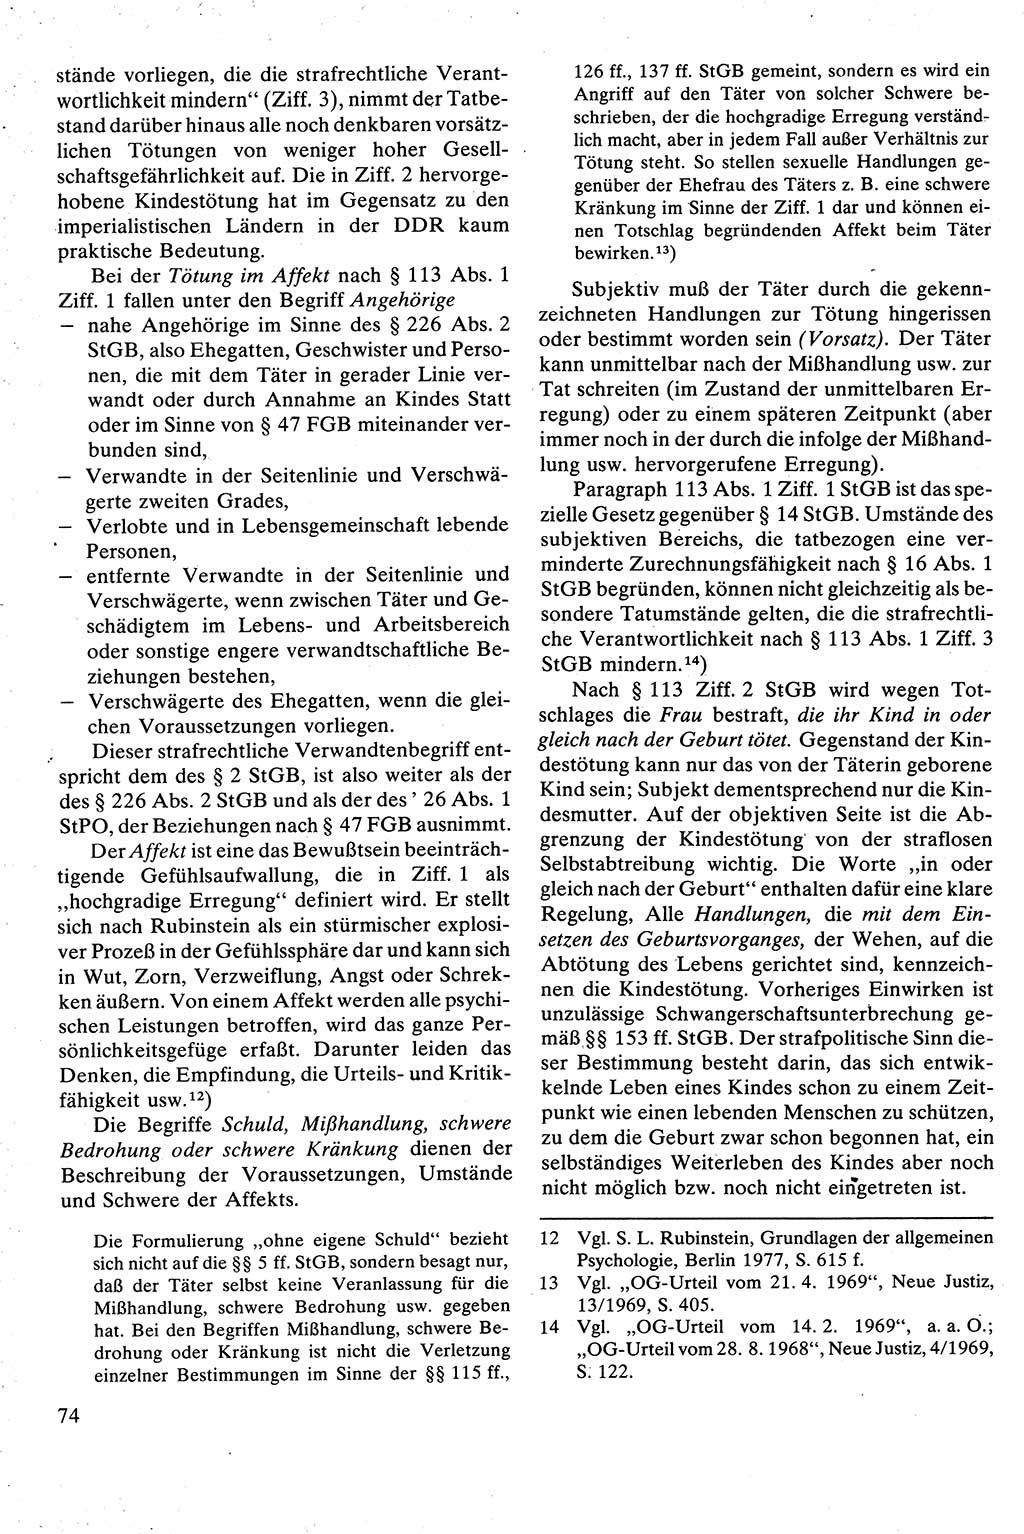 Strafrecht [Deutsche Demokratische Republik (DDR)], Besonderer Teil, Lehrbuch 1981, Seite 74 (Strafr. DDR BT Lb. 1981, S. 74)